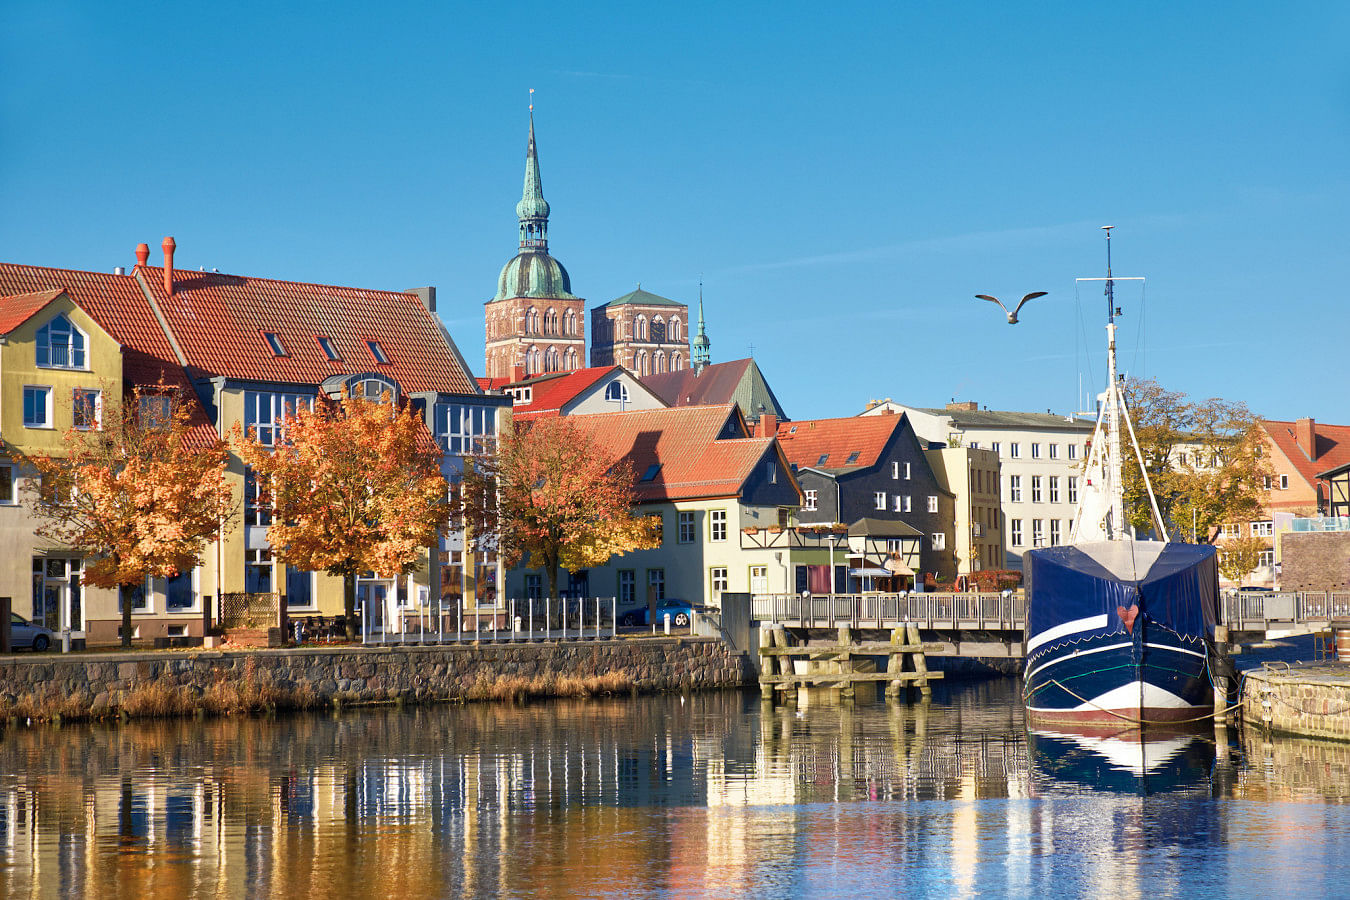 Lej en båd i Stralsund